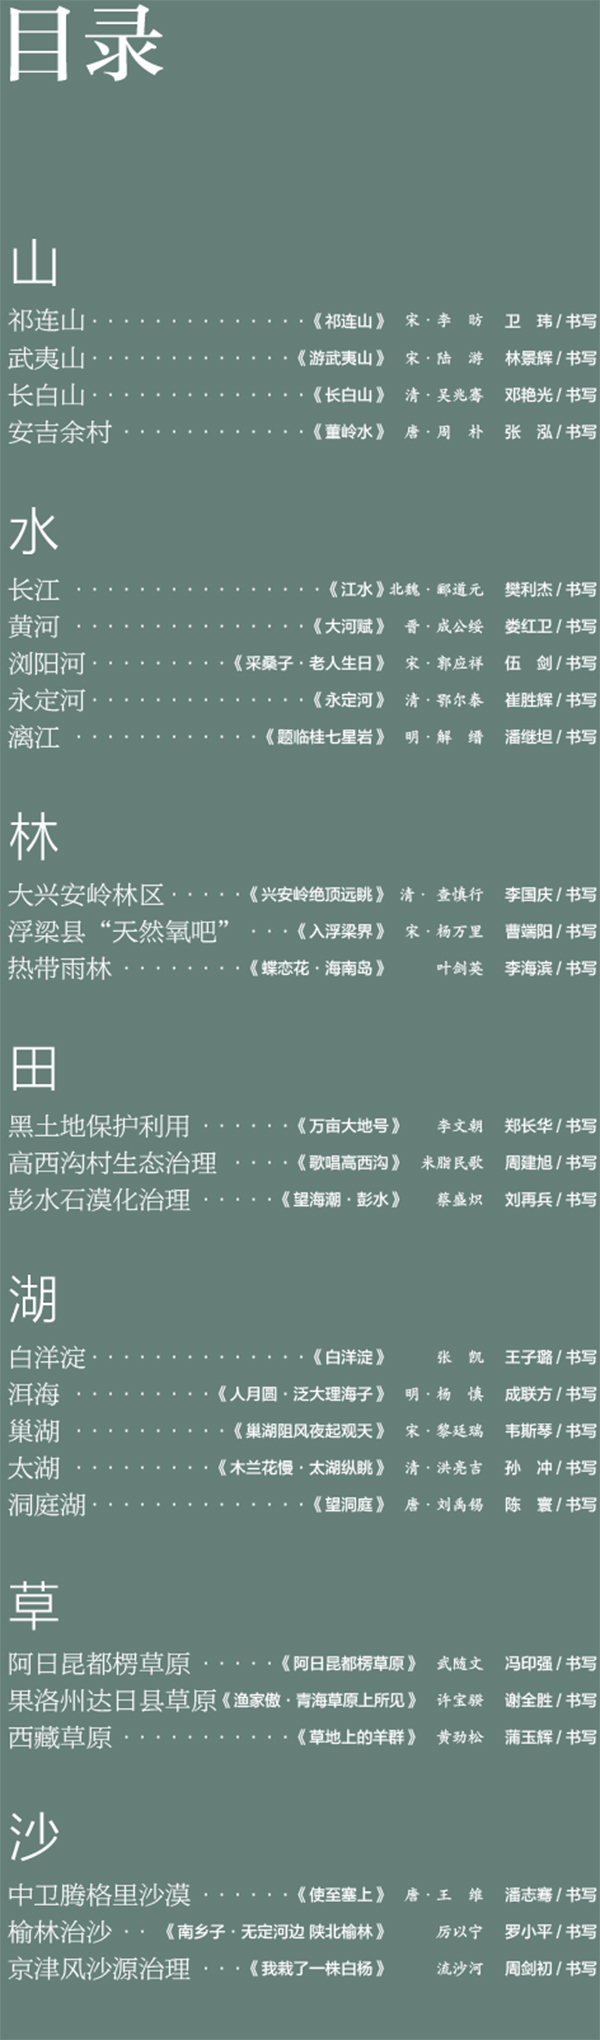 中国书协主题创作书法系列展——美丽中国插图2题字网